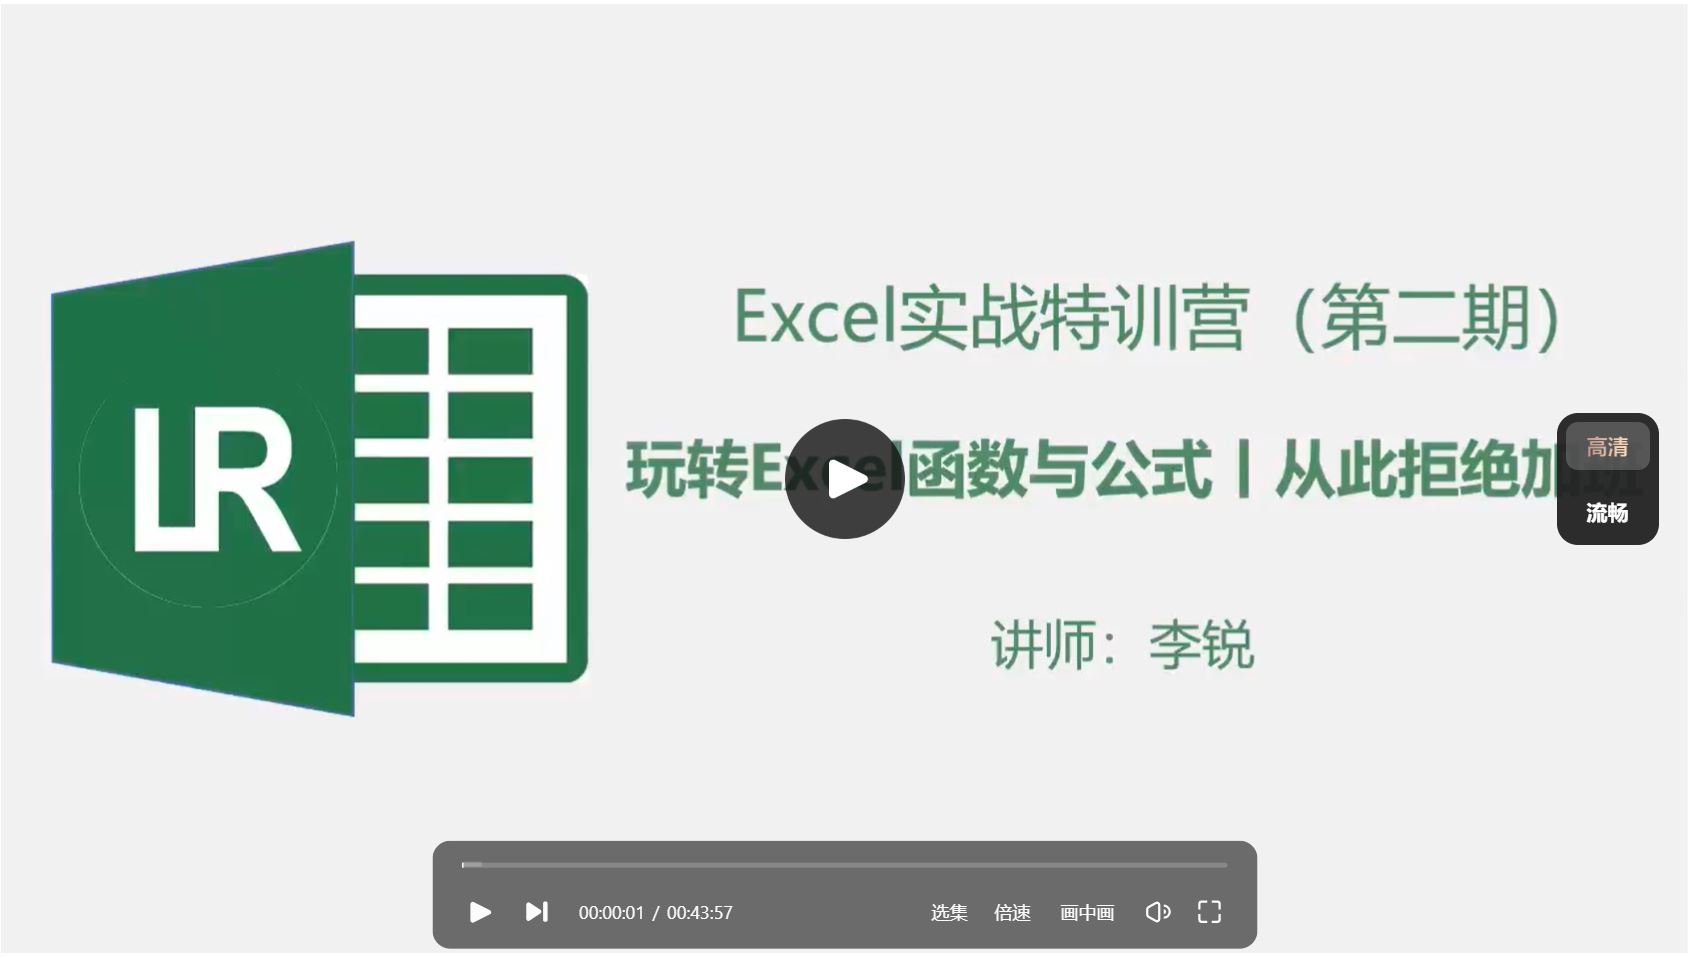 Excel 实战特训班 玩转 Excel 函数与公式 视频版 excel 函数公式 一学就会